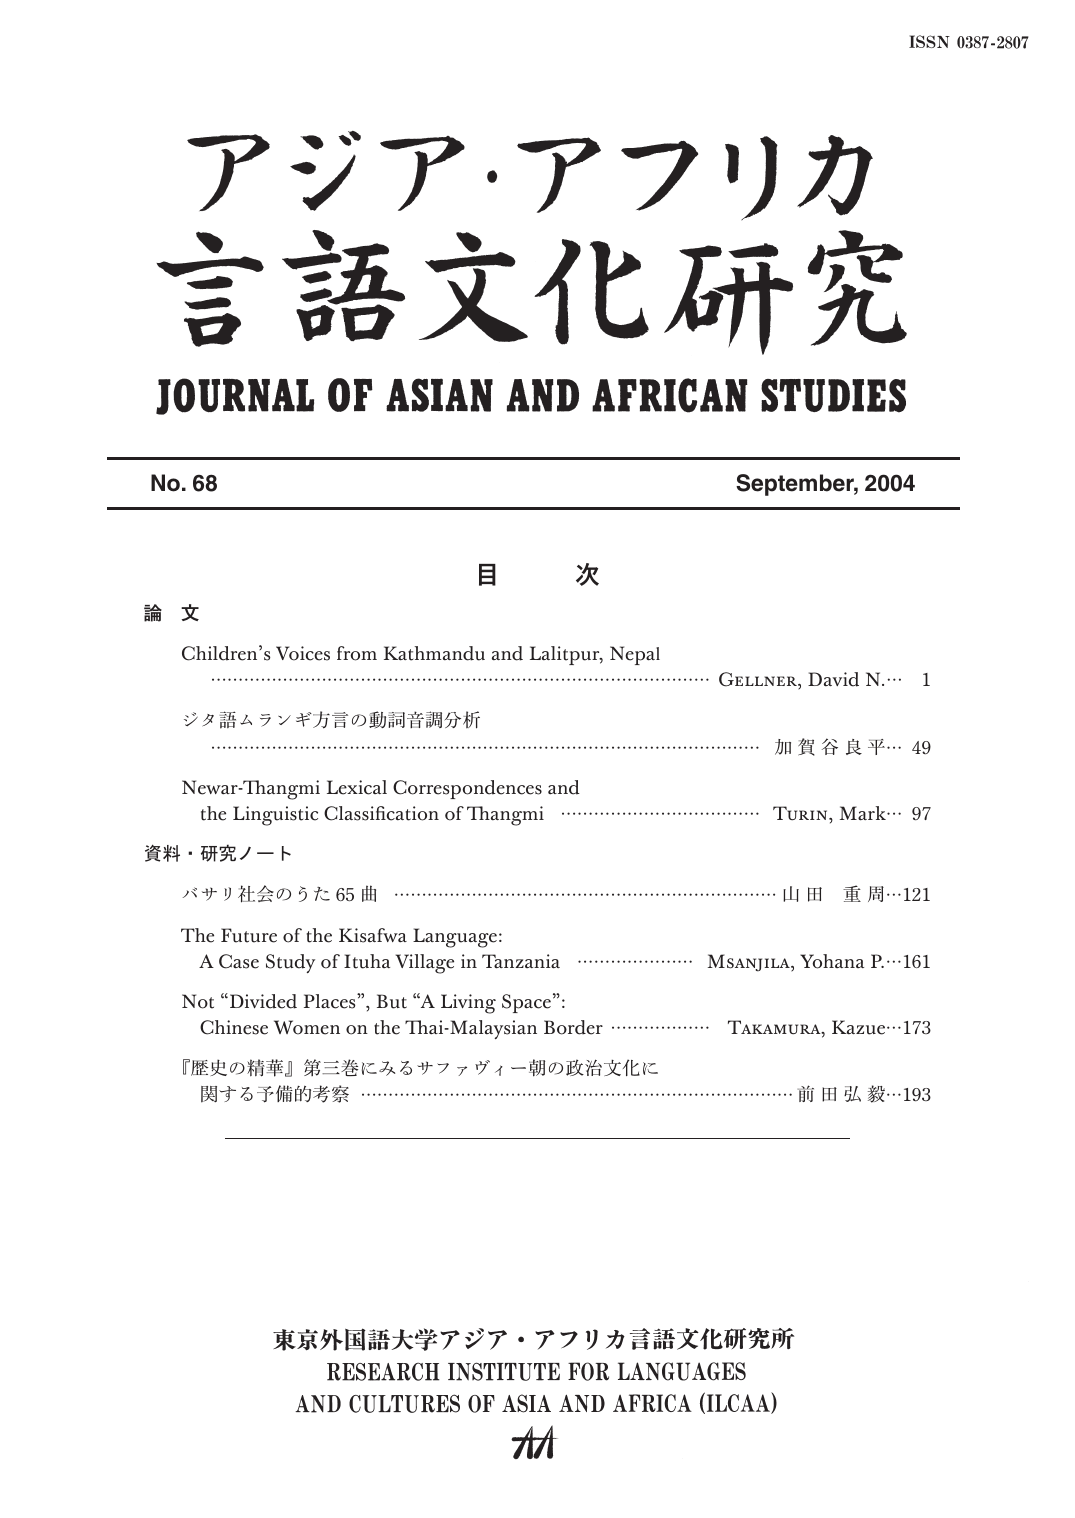 目 次 - 東京外国語大学アジア・アフリカ言語文化研究所